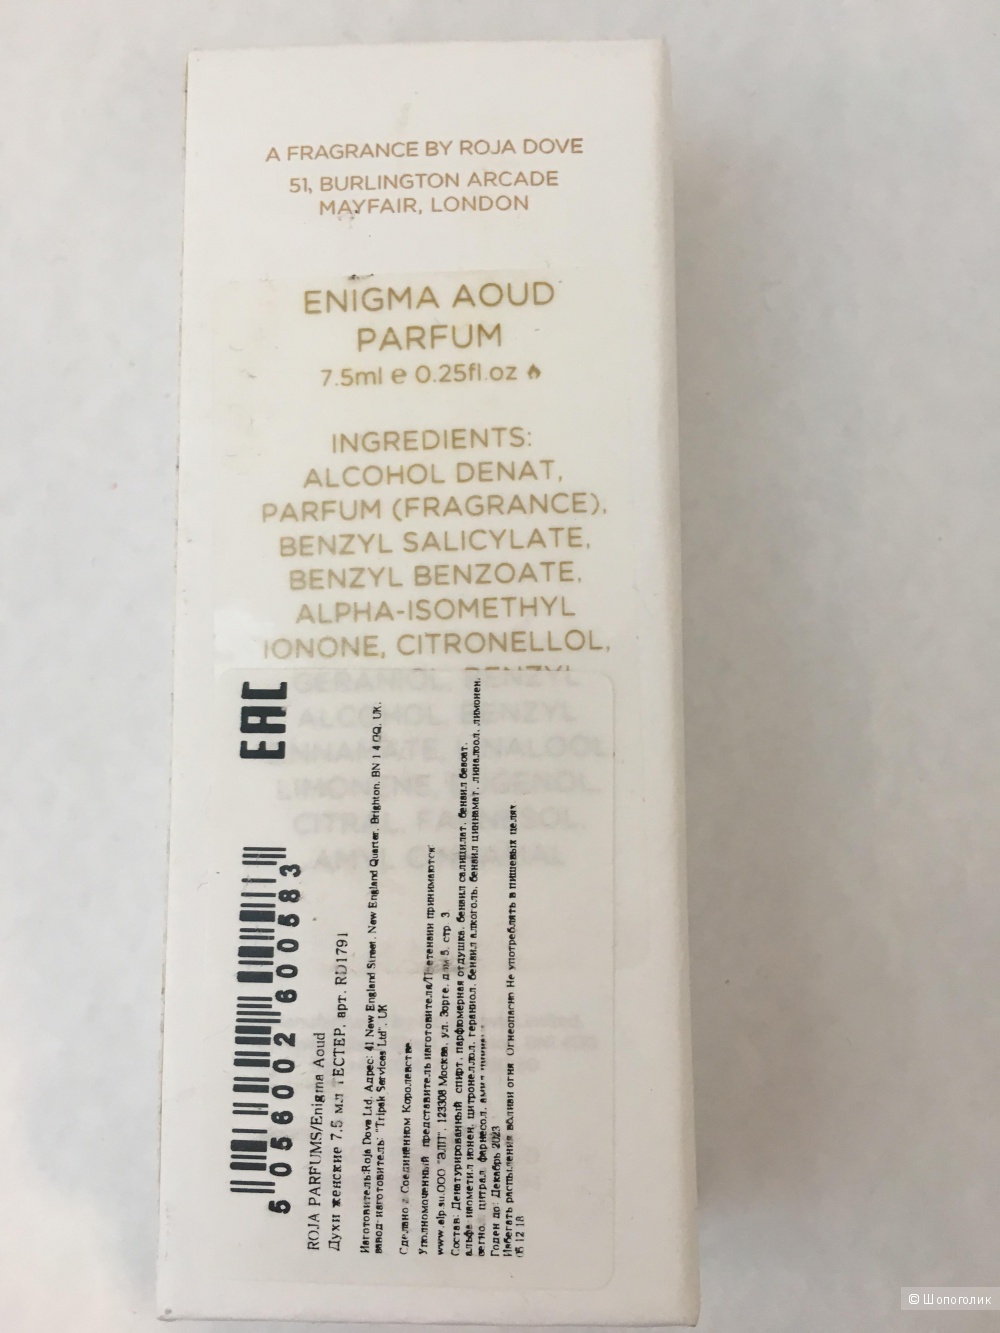 ROJA PARFUMS Enigma Aoud parfum 7,5ml